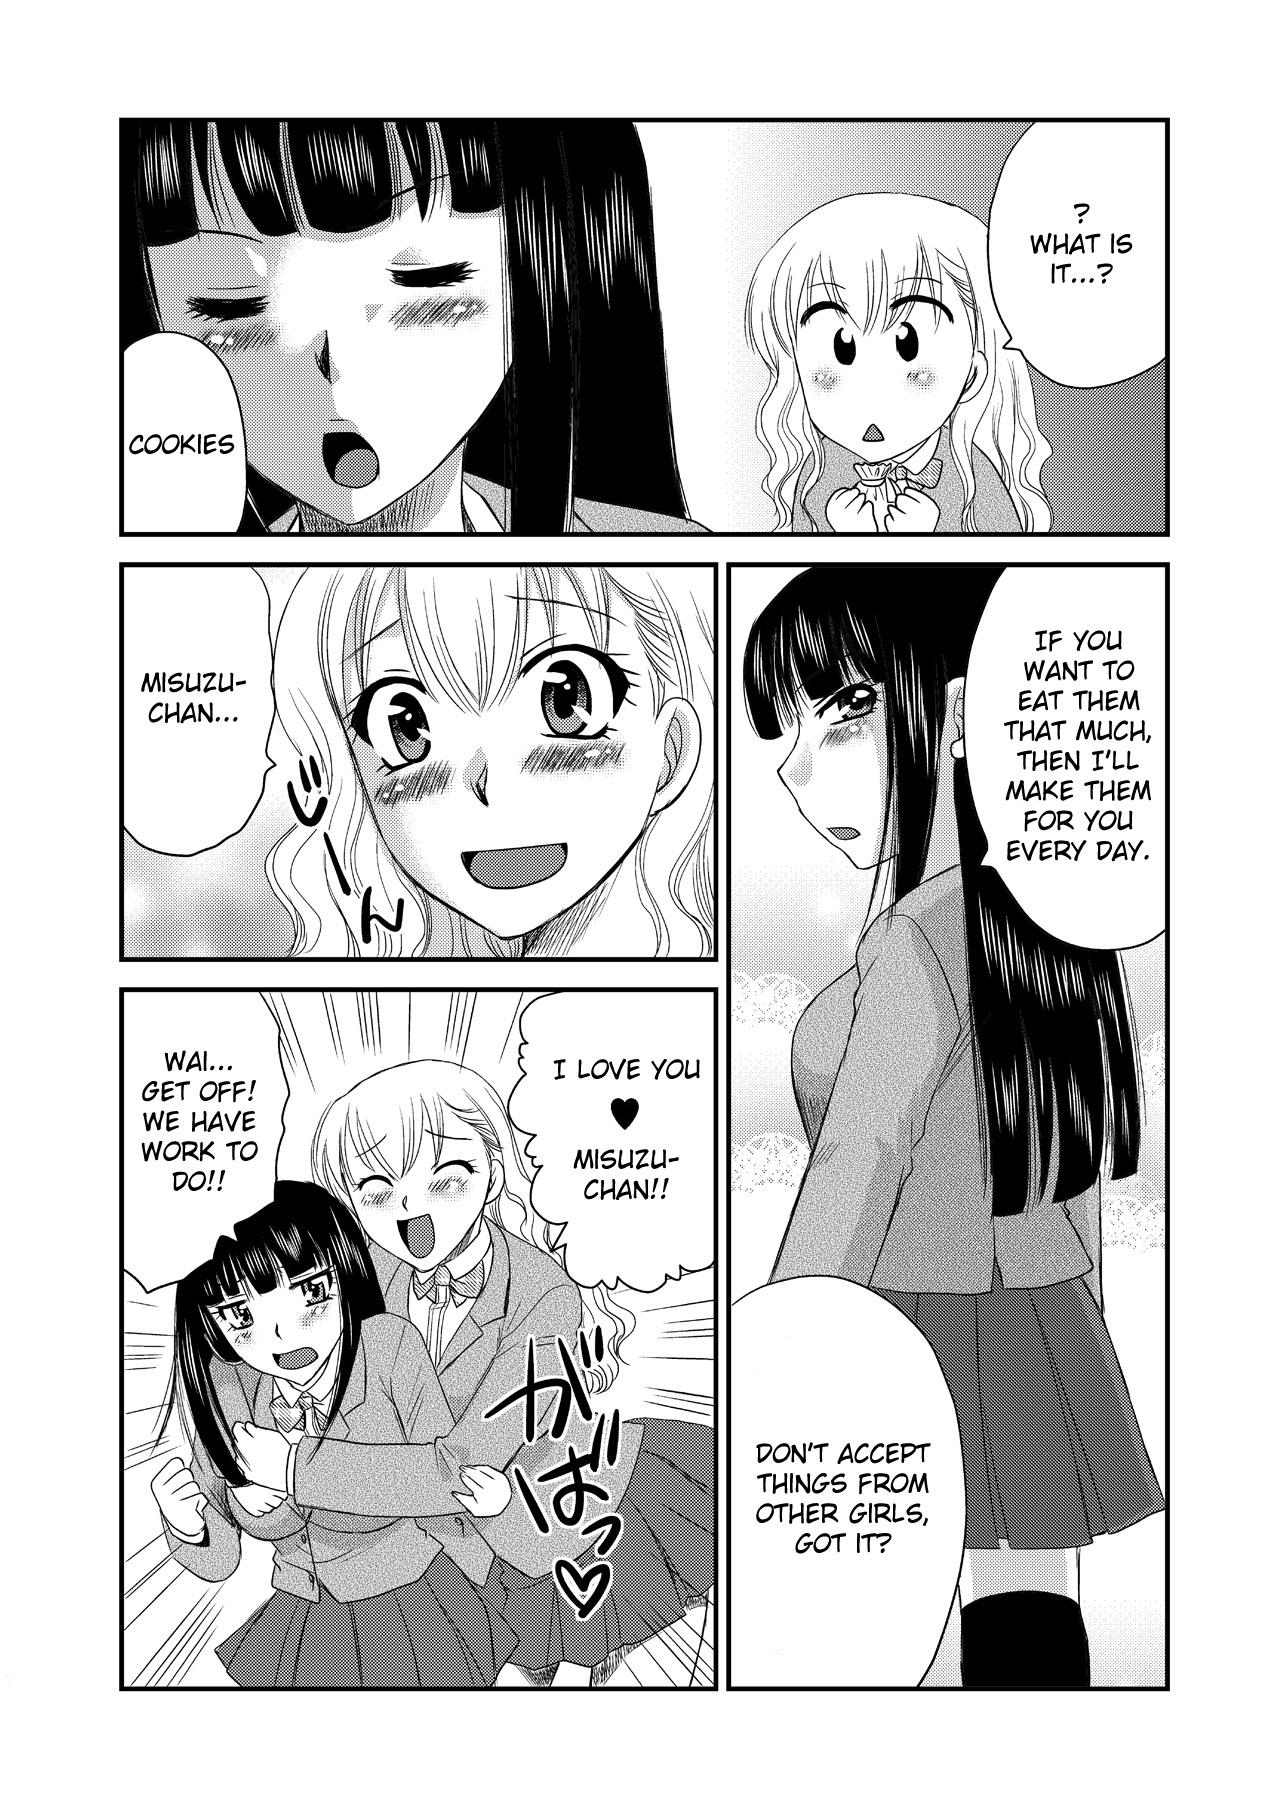 Yuri manga smut